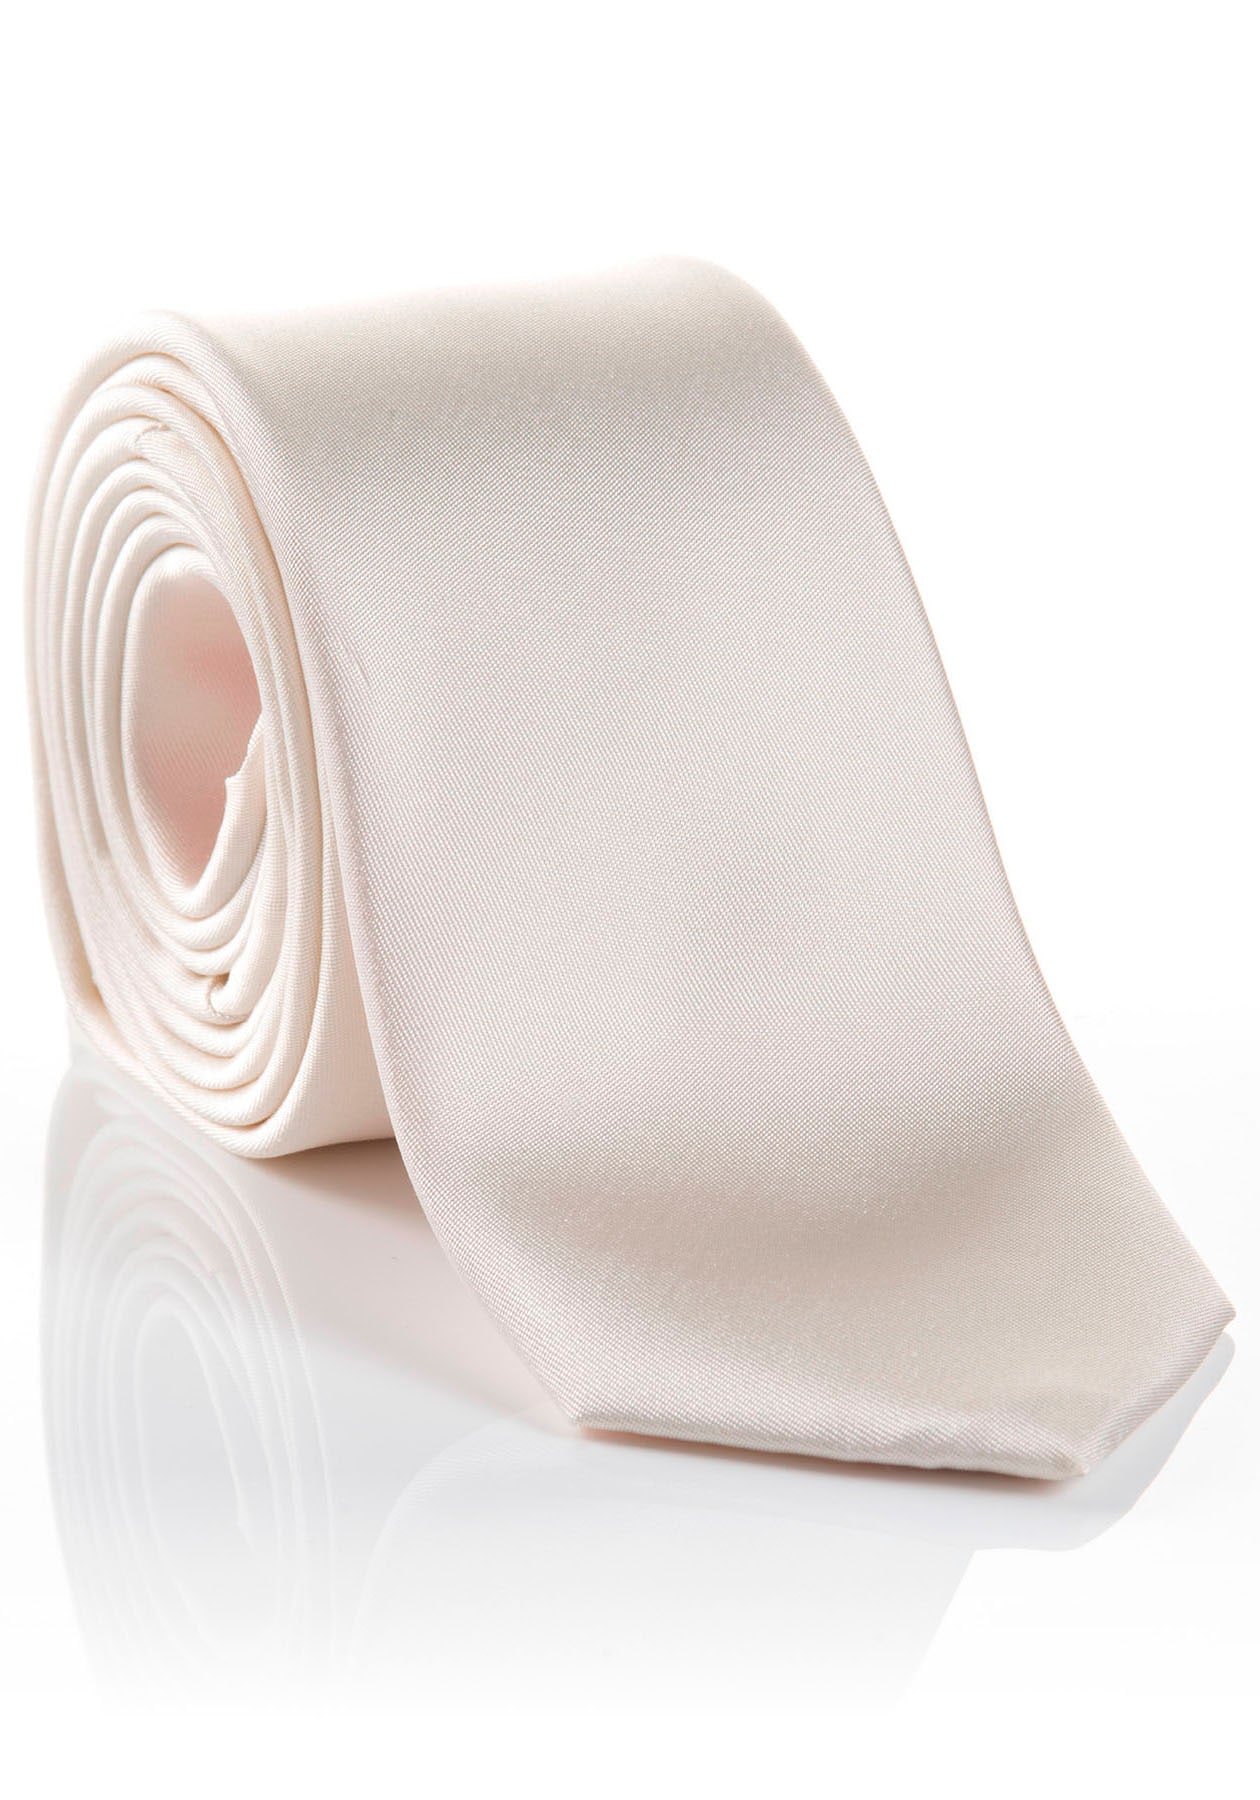 Krawatte verarbeitete Seidenkrawatte mit | Tragekomfort UNIVERSAL kaufen »LIVIO«, Hochwertig hohem MONTI